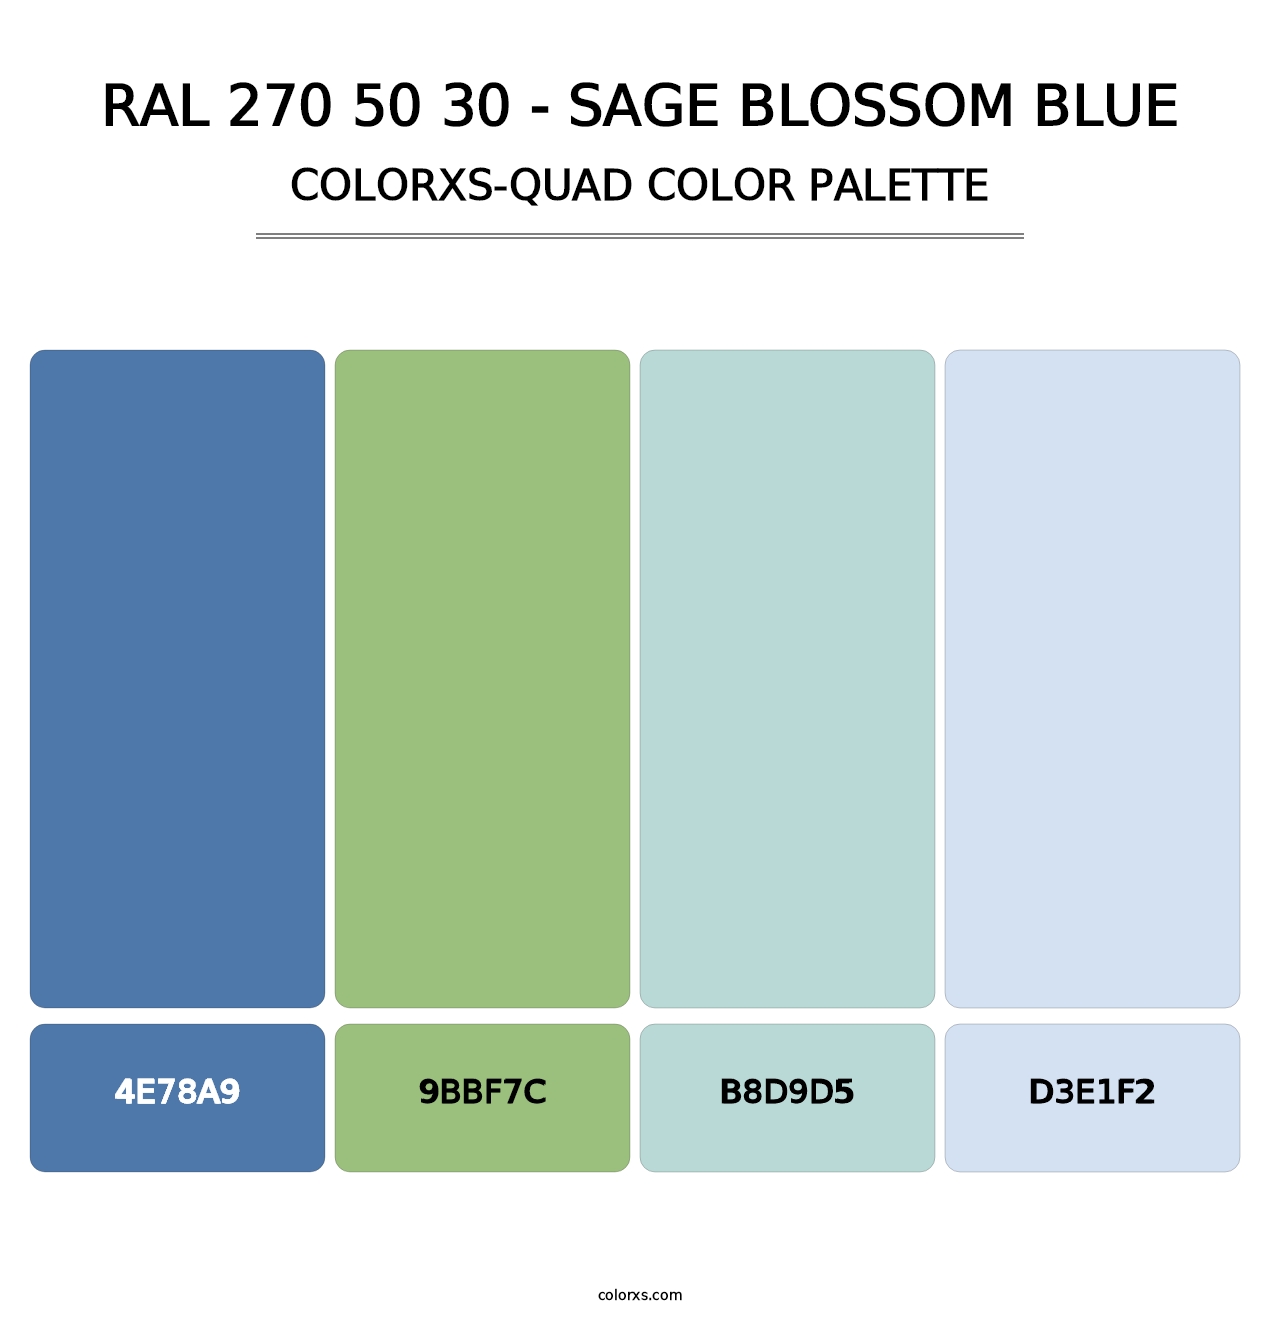 RAL 270 50 30 - Sage Blossom Blue - Colorxs Quad Palette